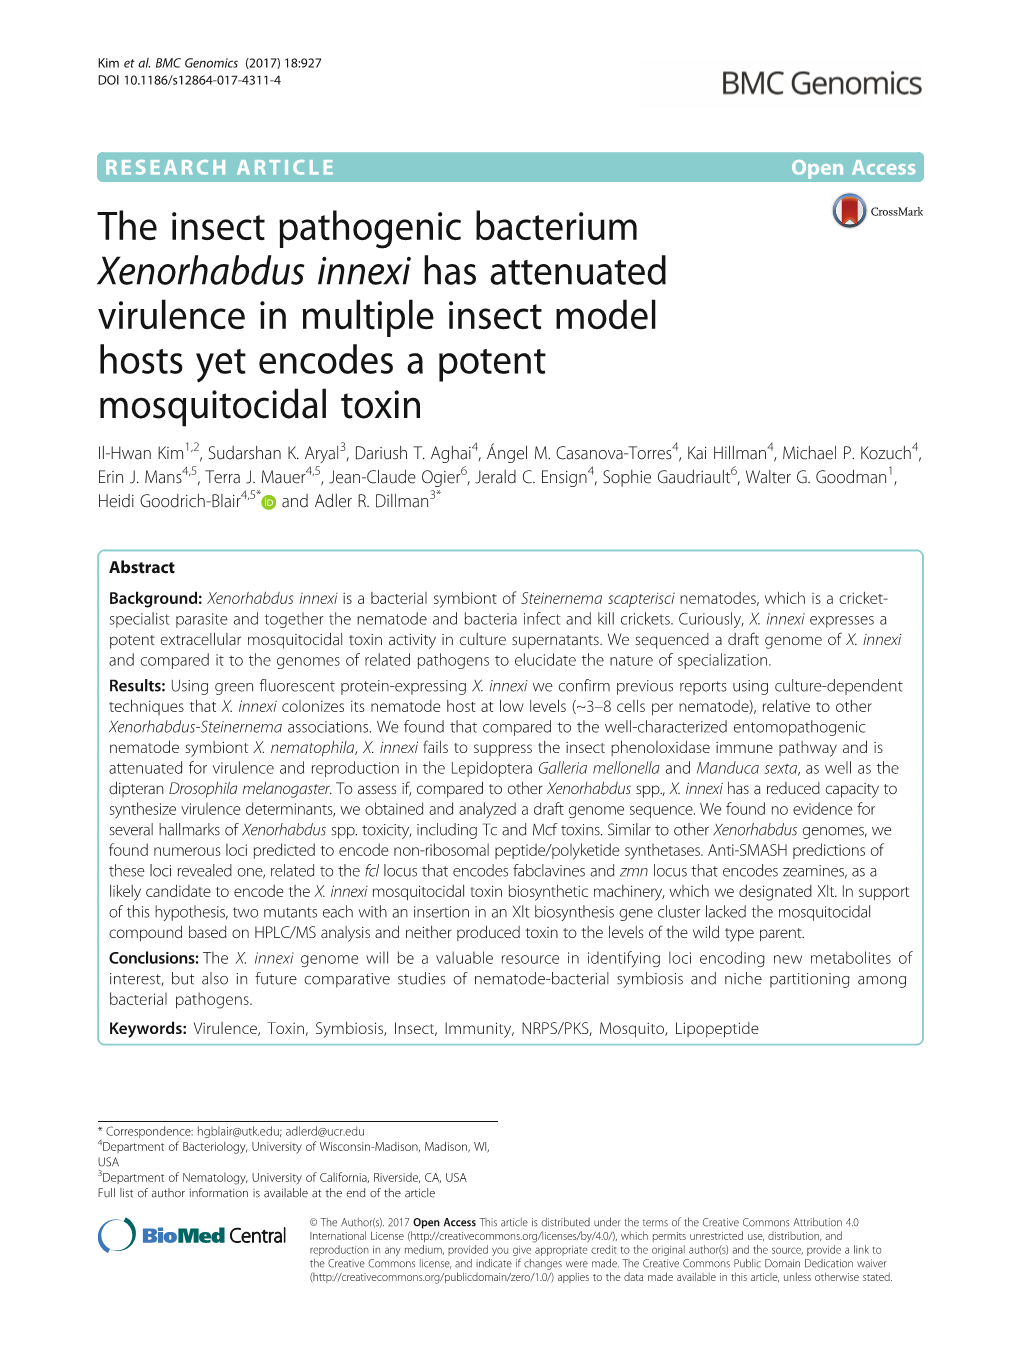 The Insect Pathogenic Bacterium Xenorhabdus Innexi Has Attenuated